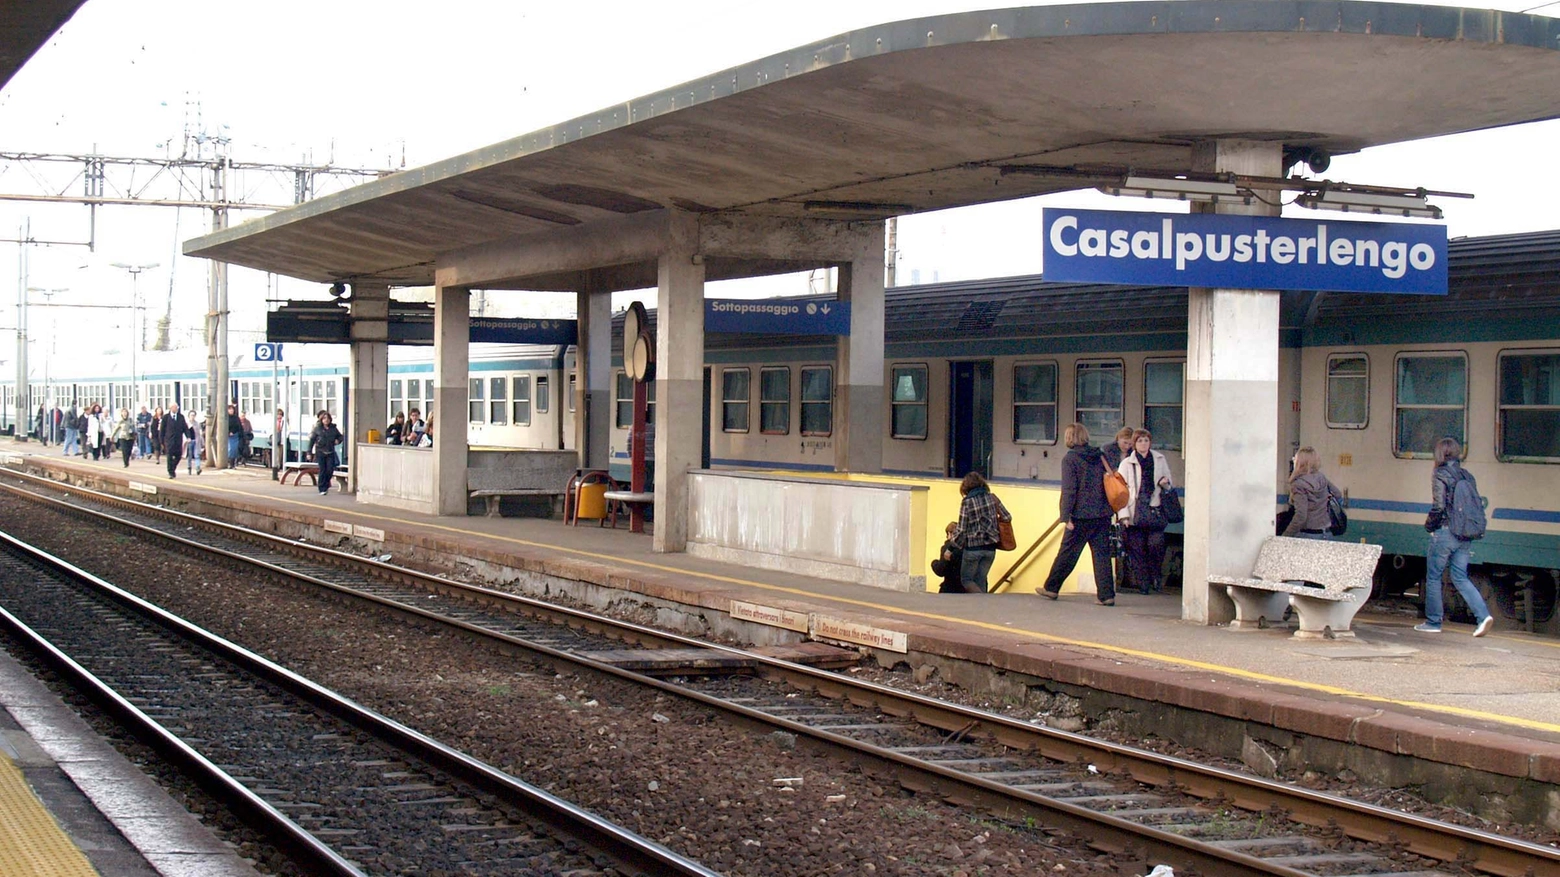 La stazione di Casalpusterlengo in una foto d'archivio